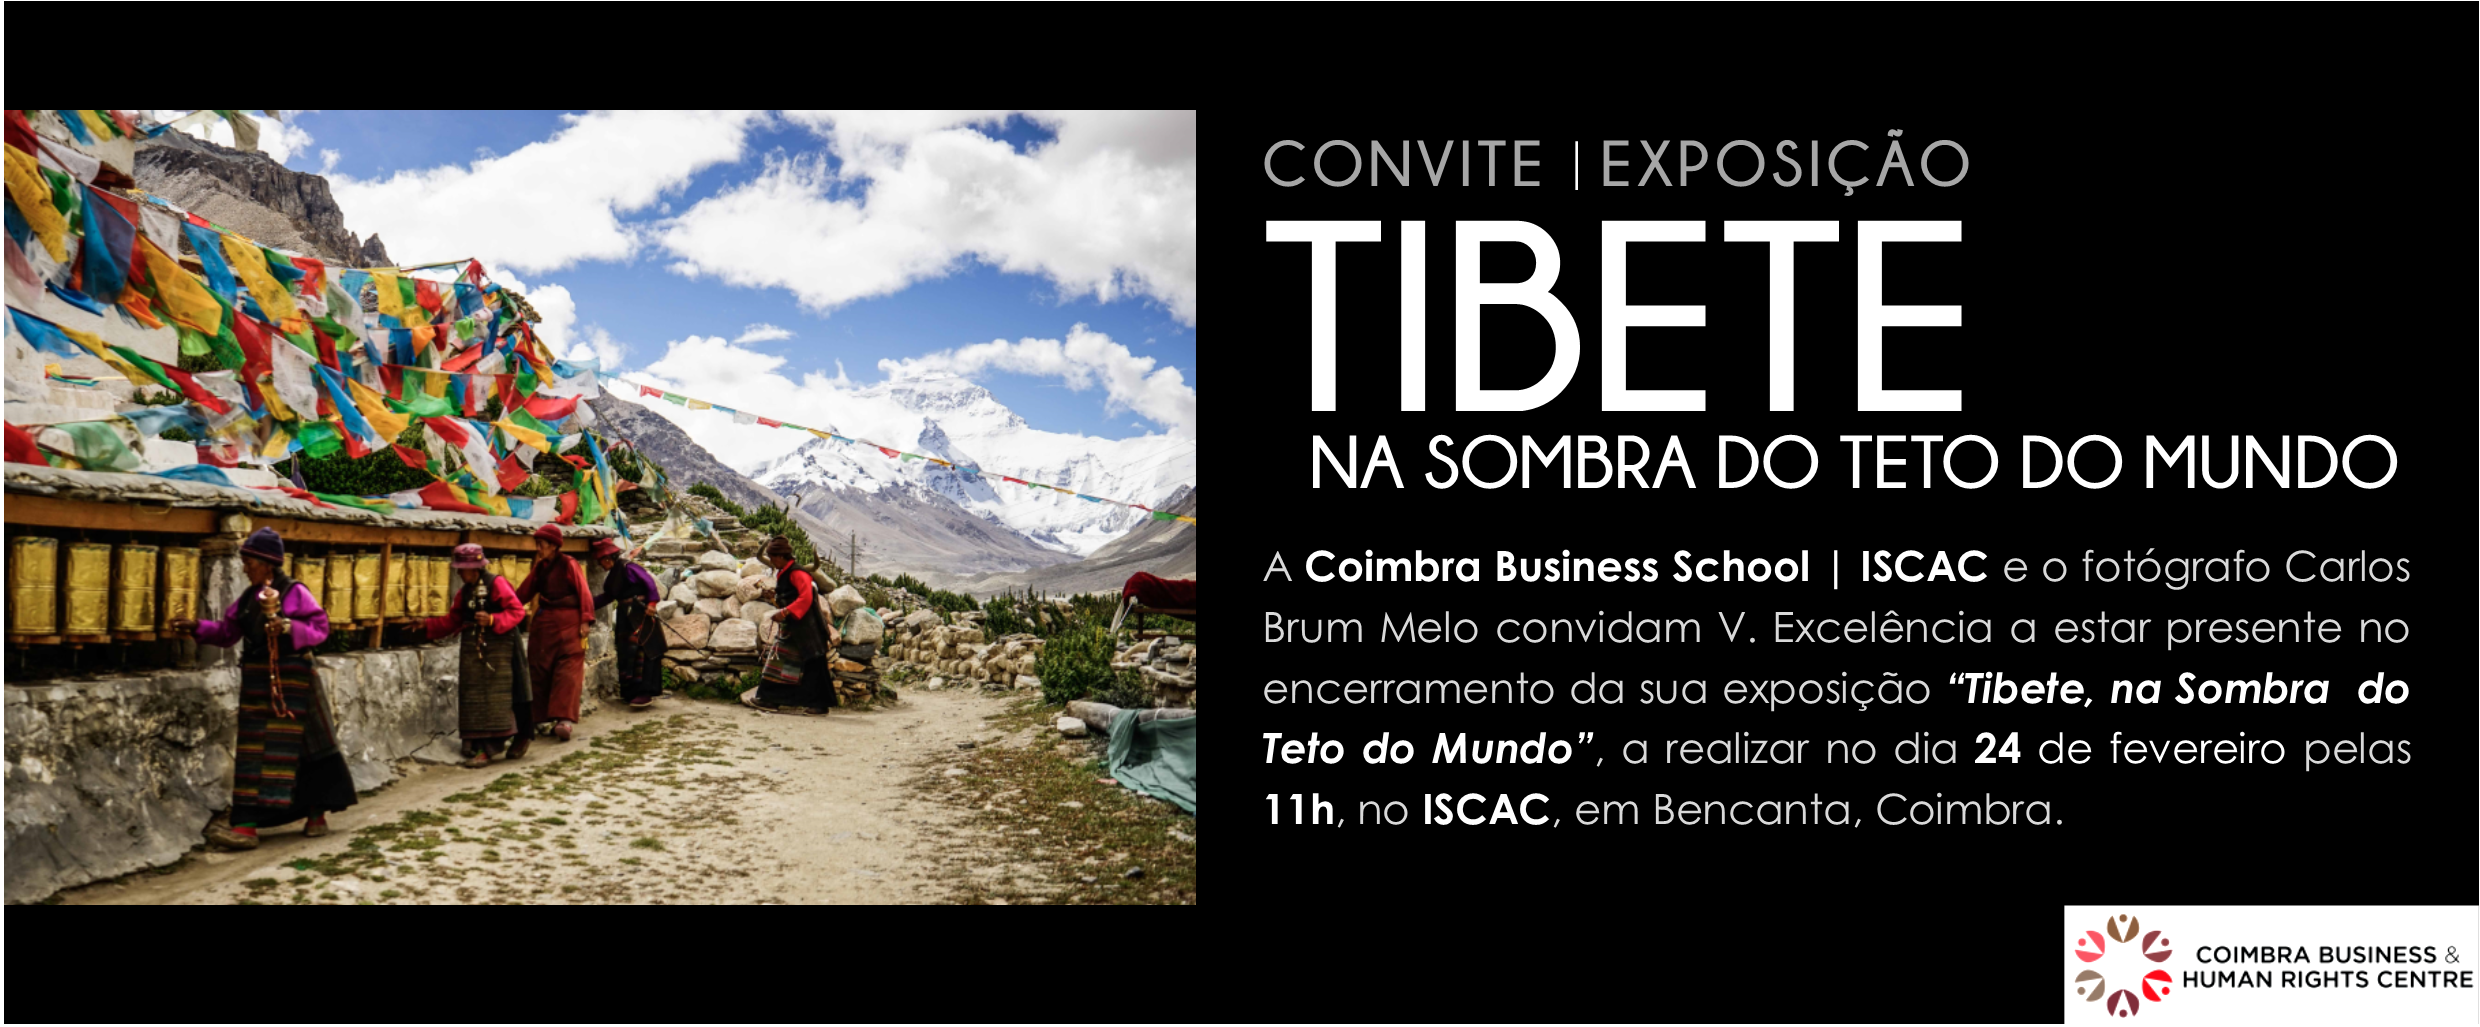 Exposição “Tibete, na sombra do teto do mundo – ensaio fotográfico” por Carlos Brum